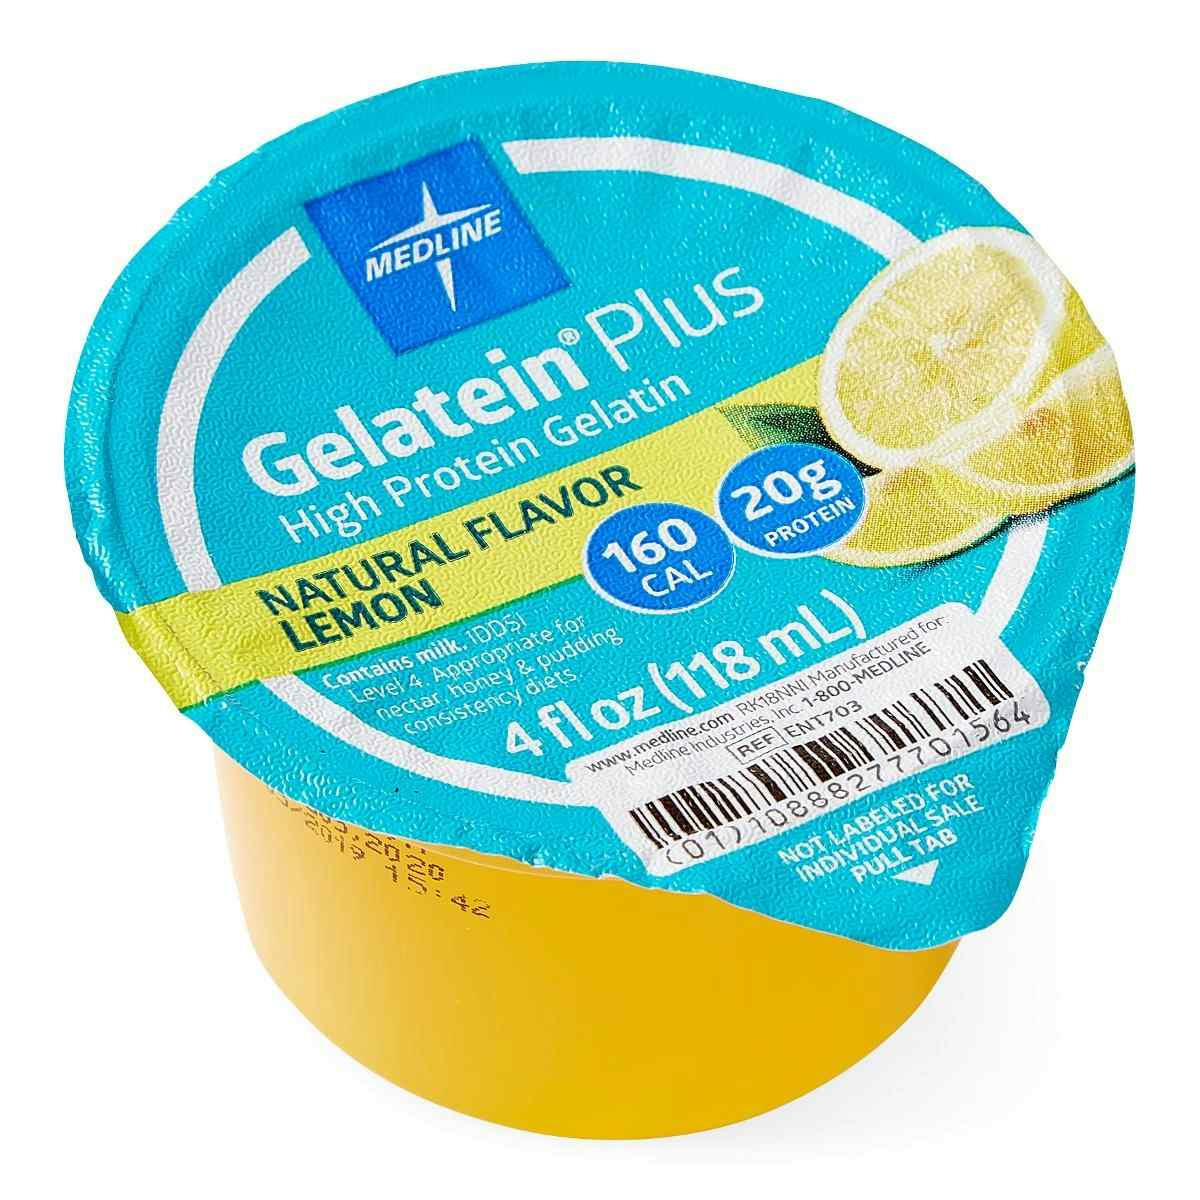 Medline Gelatein Plus High Protein Supplement, Lemon Flavor, 4-oz, ENT703, Case of 36